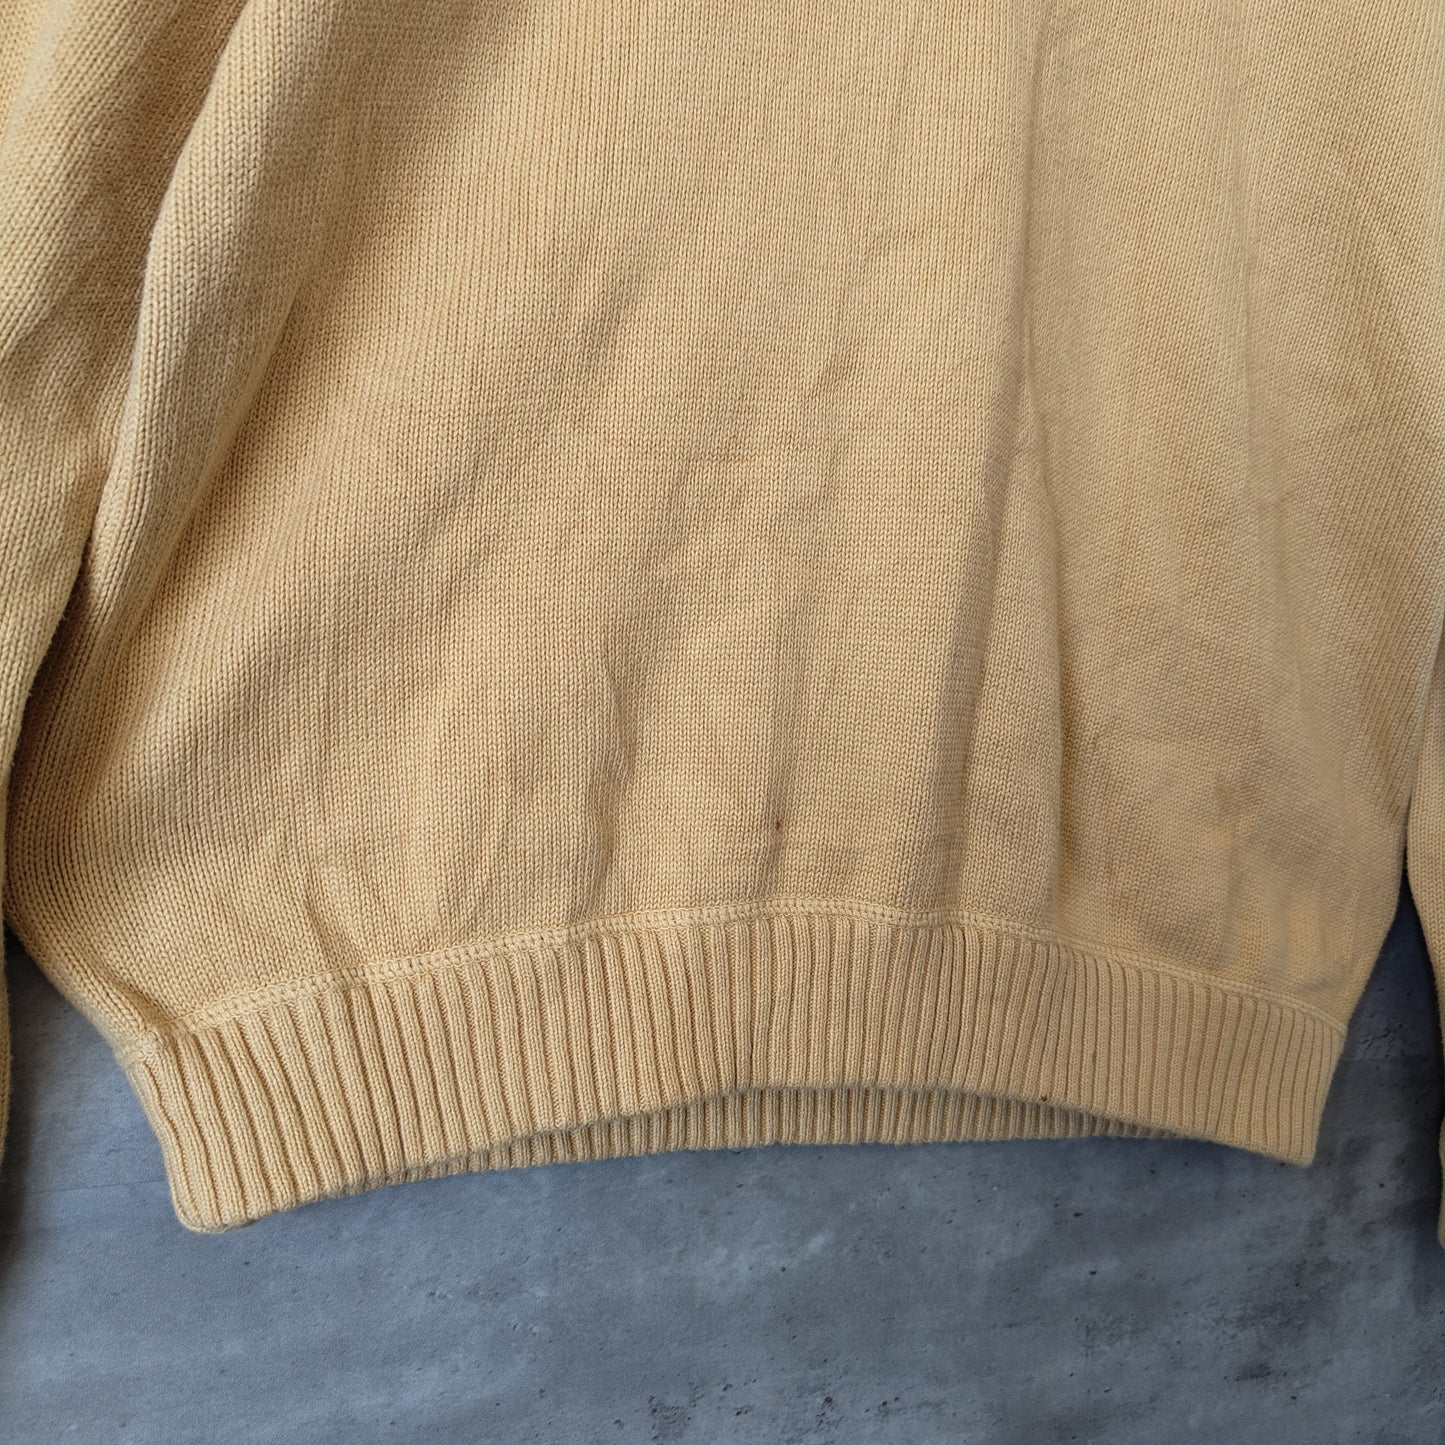 [EddieBouer] middle gauge sweater